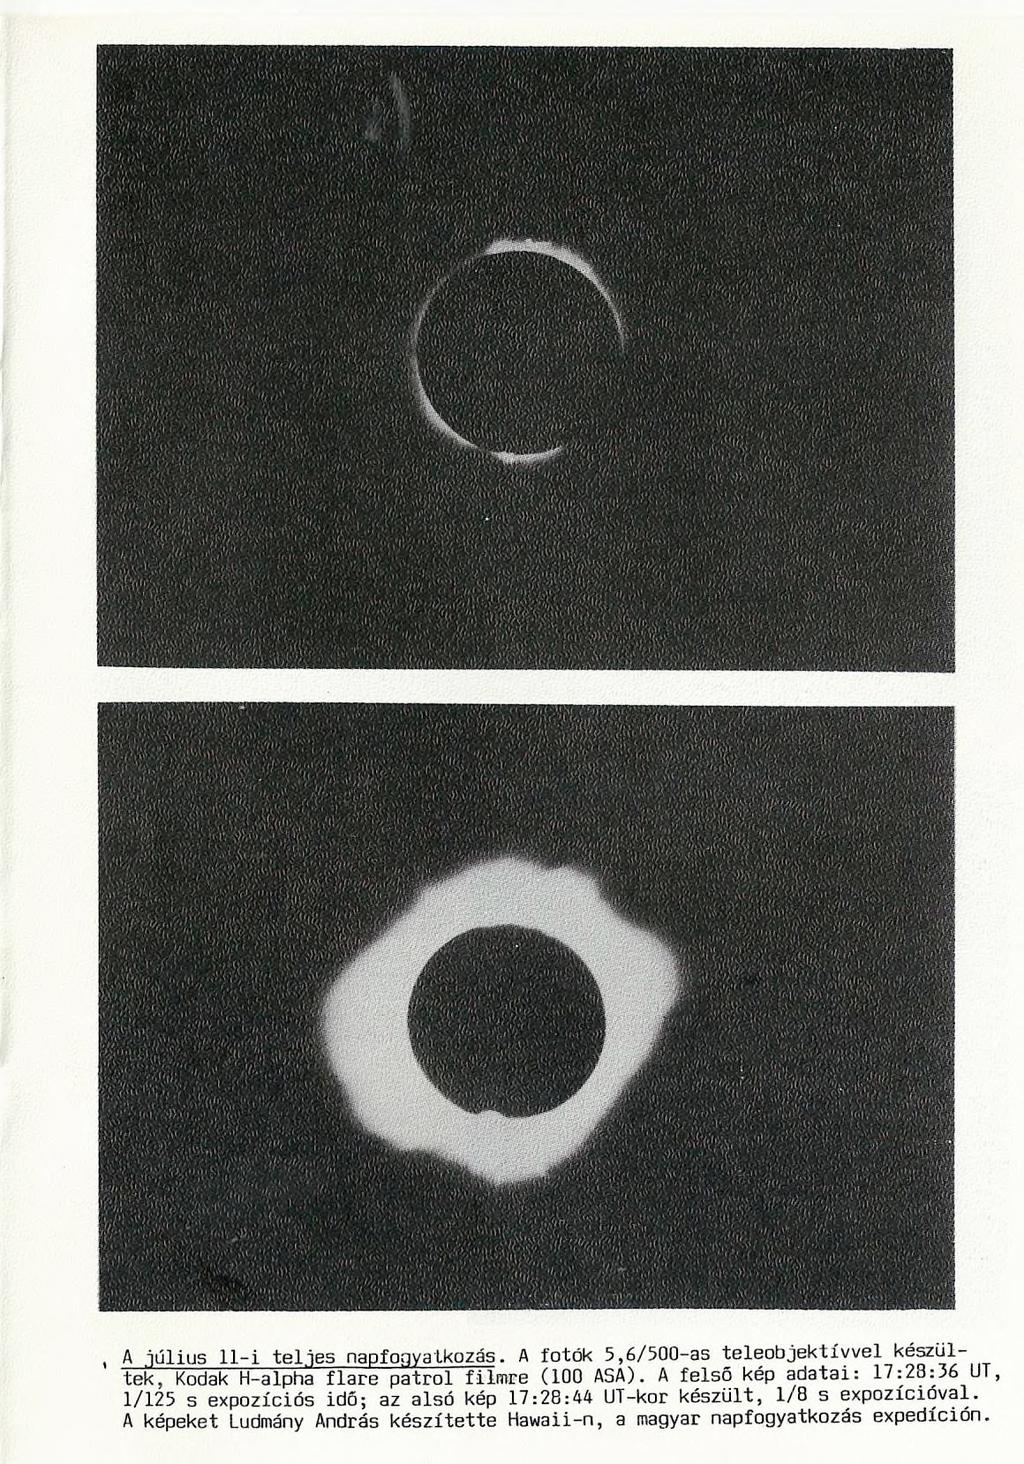 t A július 11 i teljes napfogyatkozás. A fotók 5,6/500-as teleobjektívvel készültek, Kodak H-alpha flare patrol filmre (100 ASA).